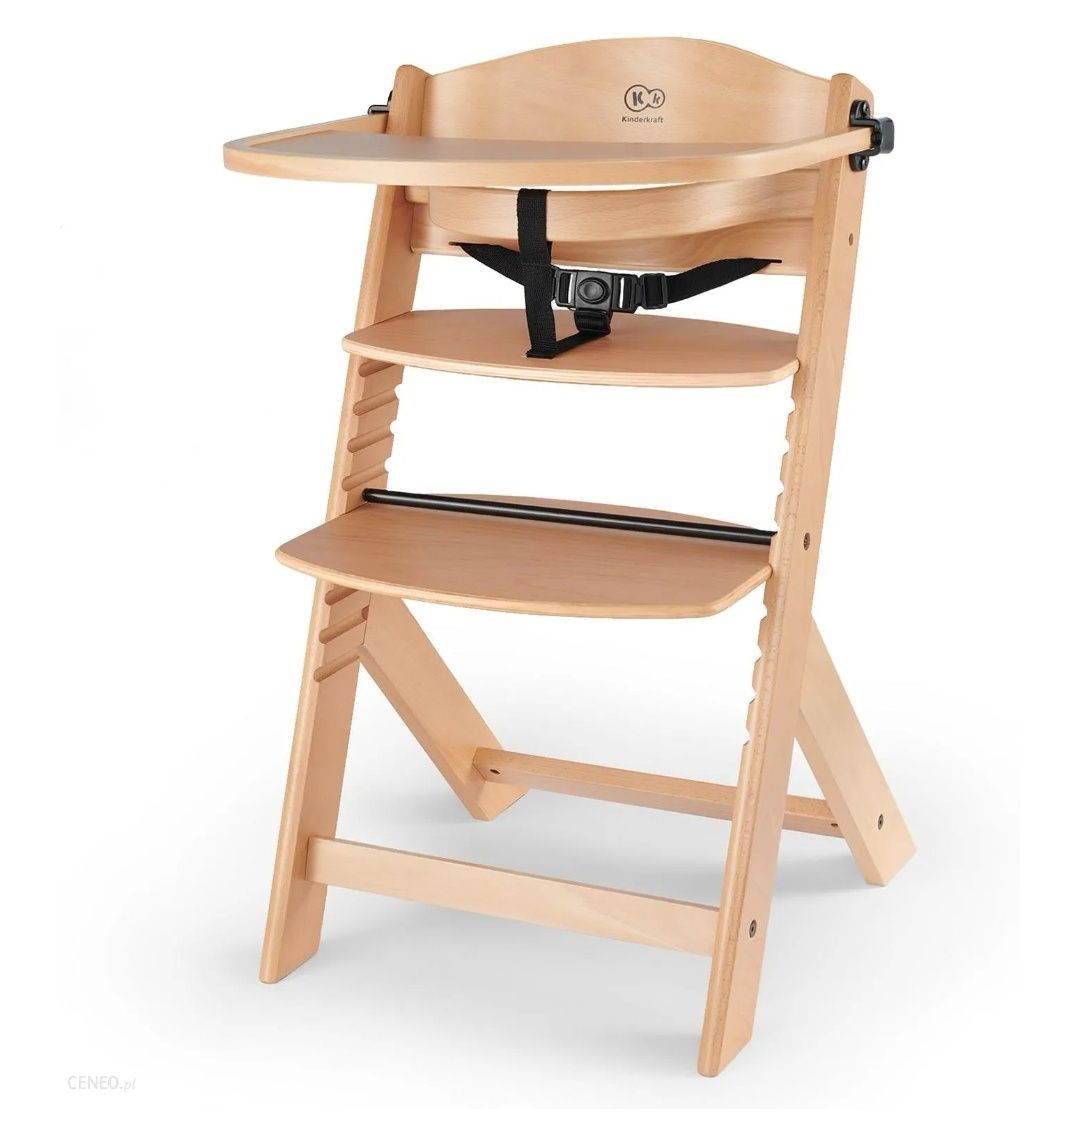 Krzesełko drewniane do karmienia kinderkraft rośnie z dzieckiem